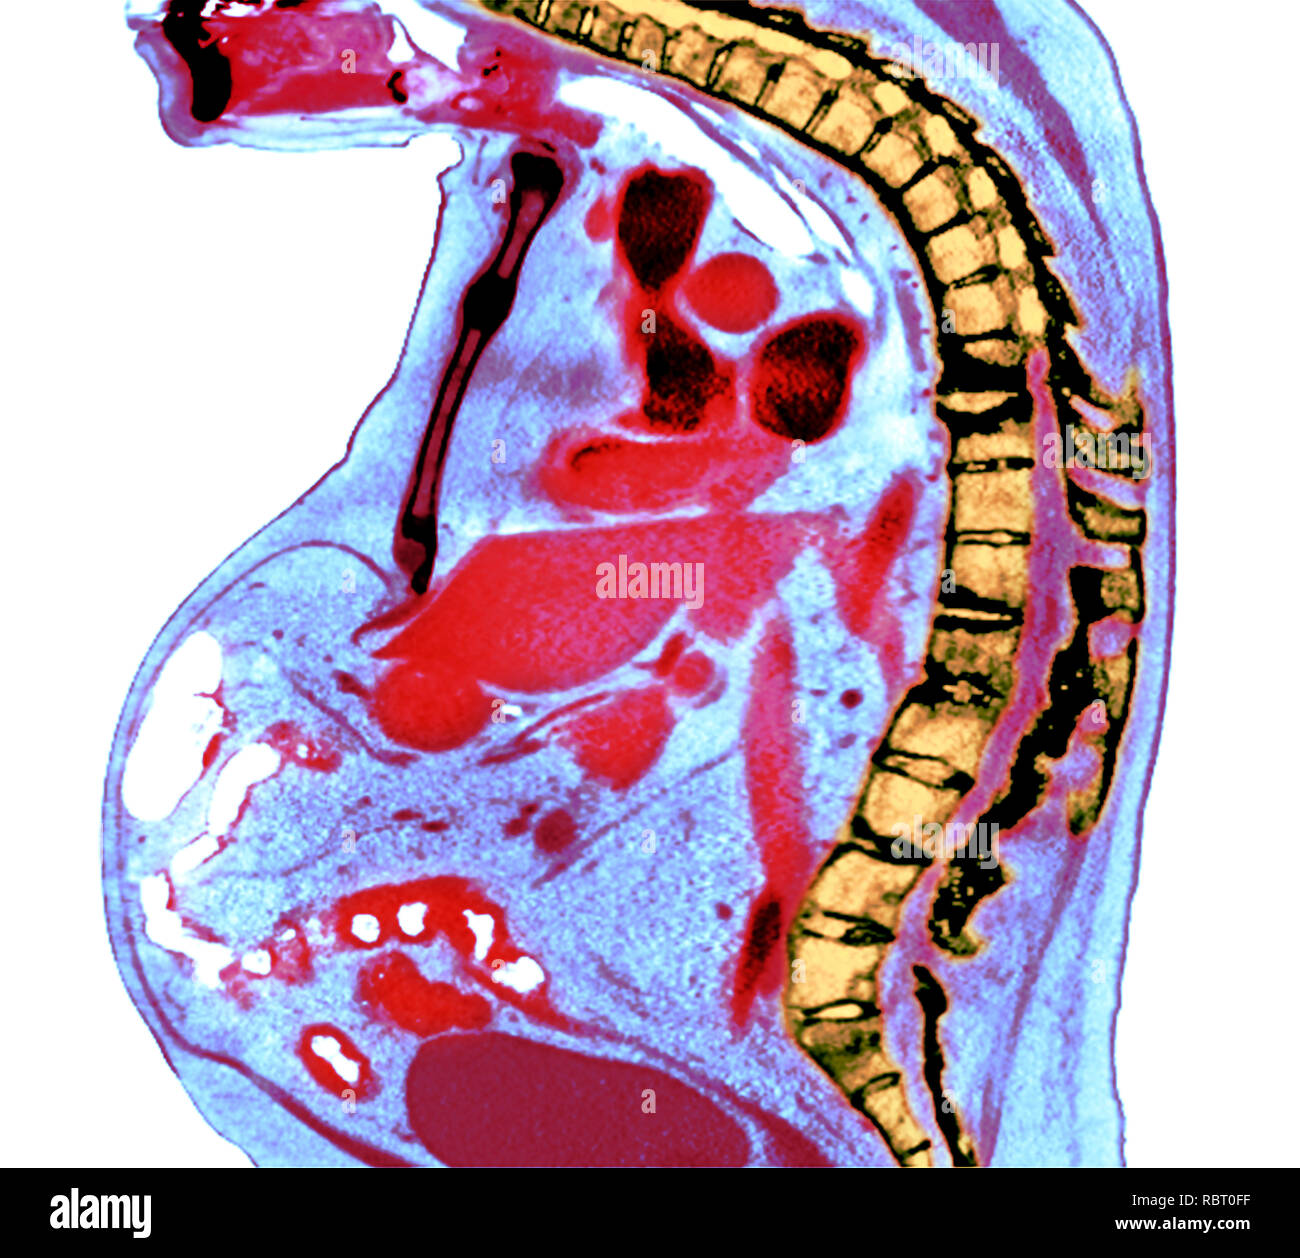 Colonne vertébrale dans la spondylarthrite ankylosante. X-ray de couleur d'une section à travers la colonne thoracique d'un 74-year-old male patient avec la spondylarthrite ankylosante, sho Banque D'Images